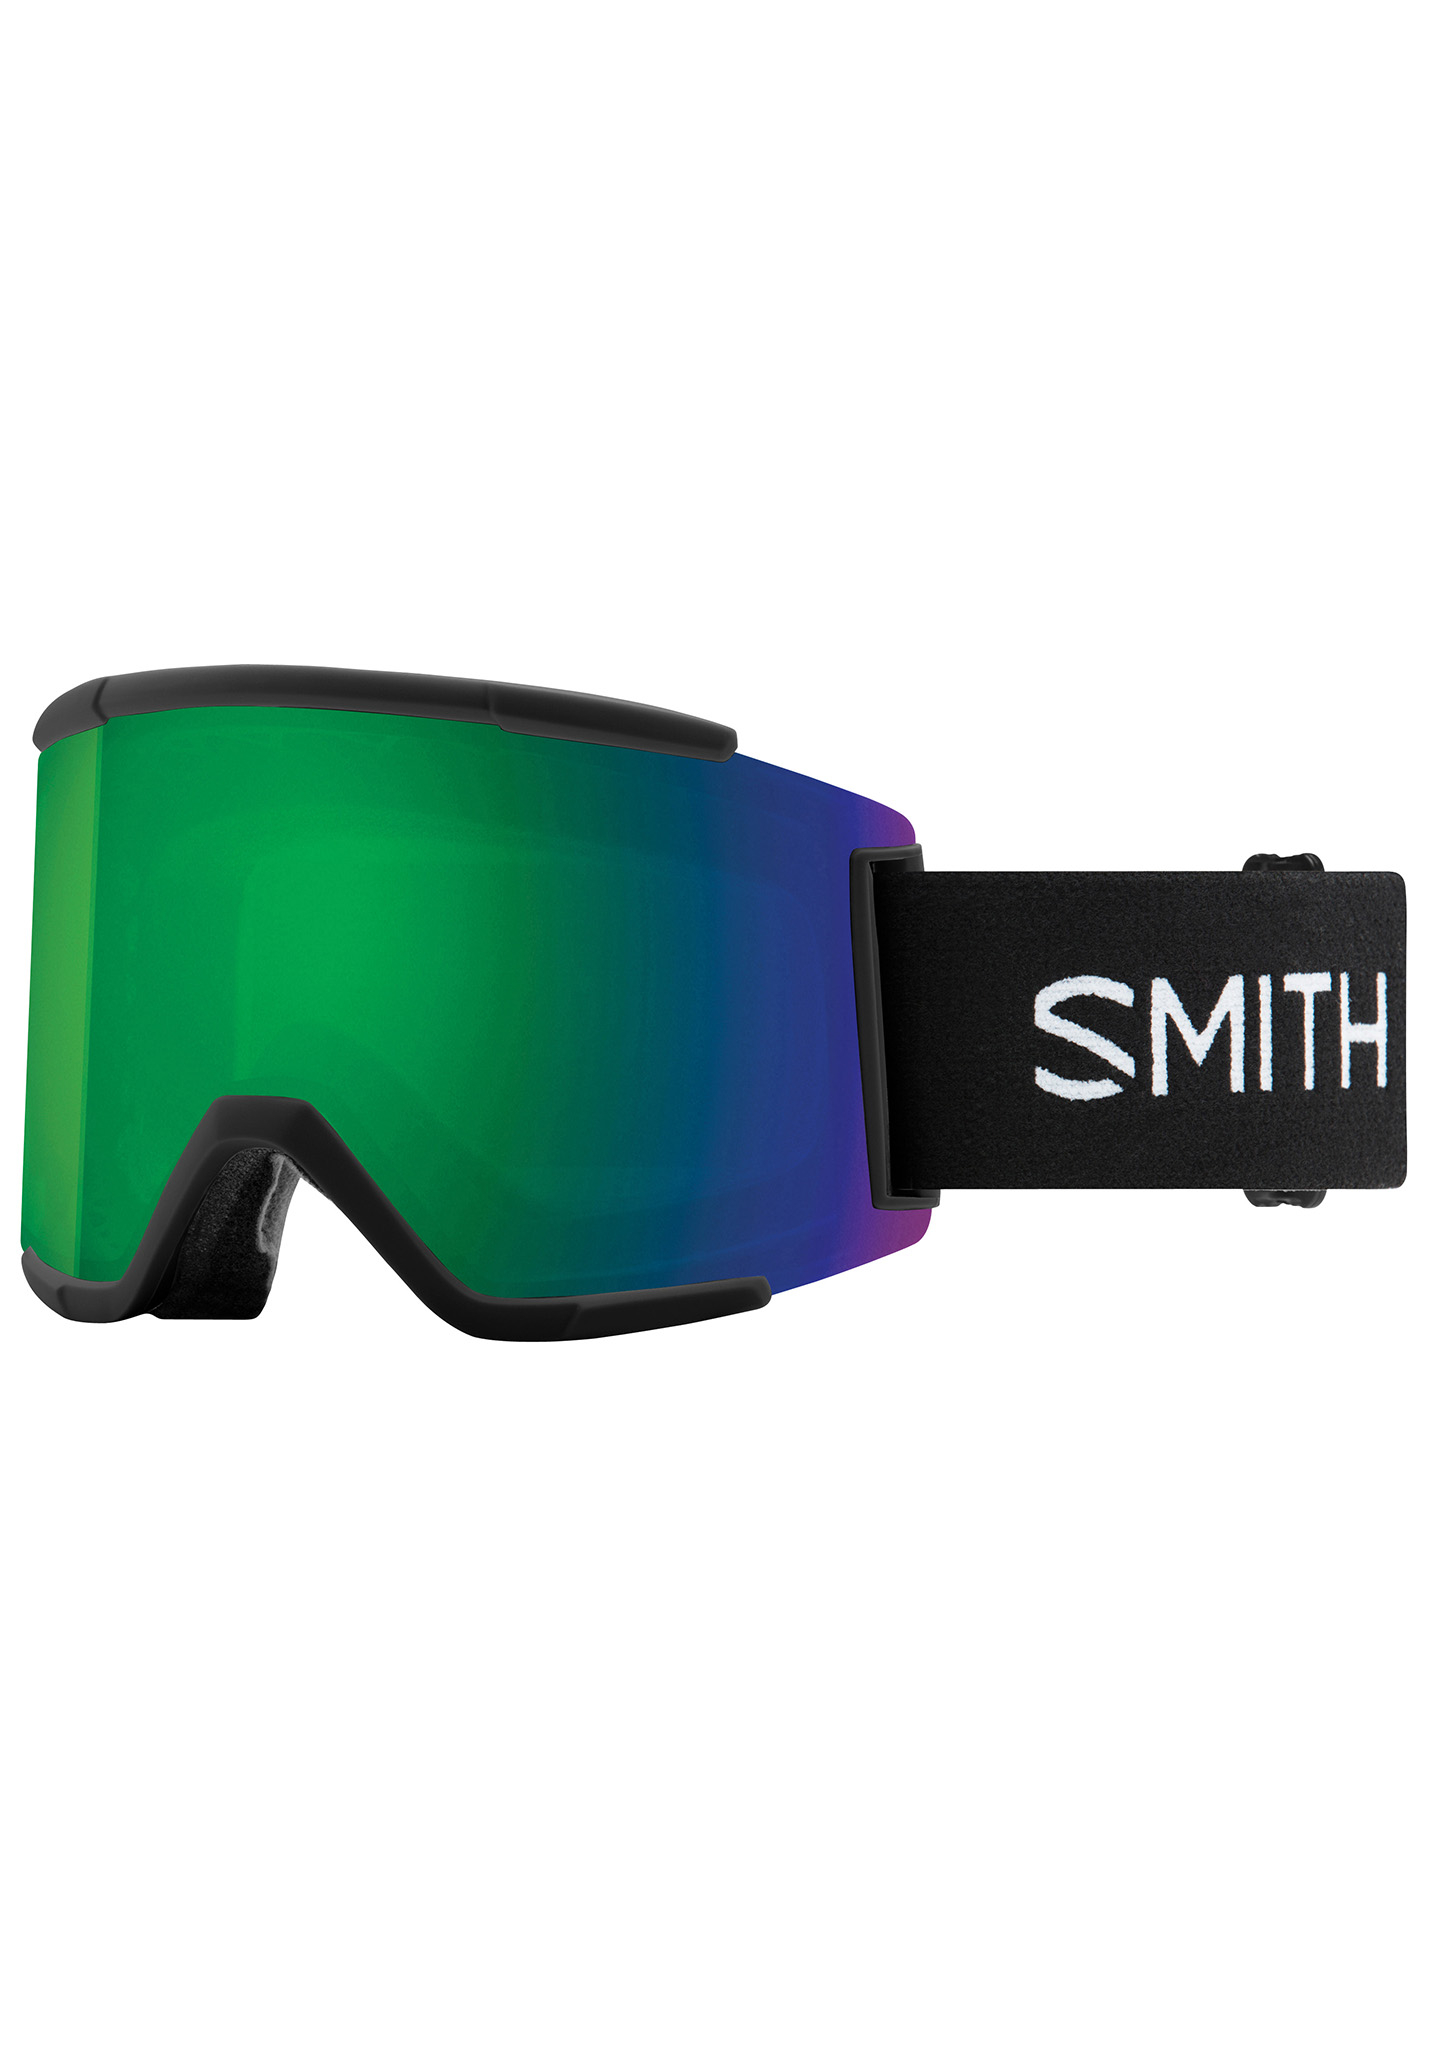 Smith Squad XL Snowboardbrillen schwarz/sonnengrüner spiegel One Size